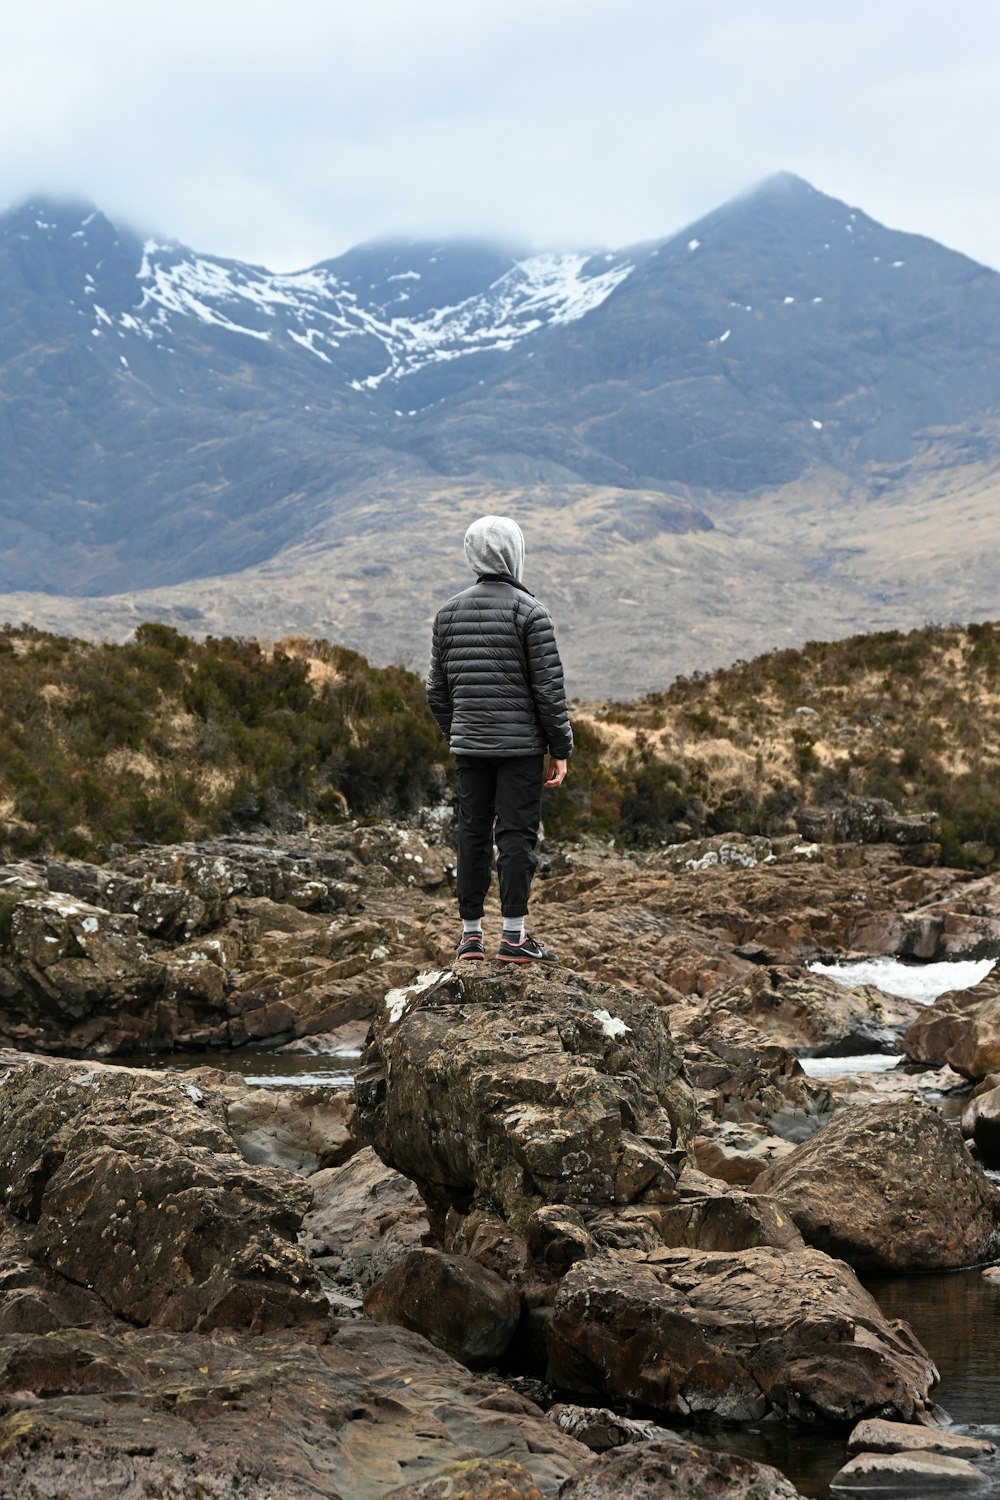 Una persona in piedi su una collina rocciosa che domina una catena montuosa innevata